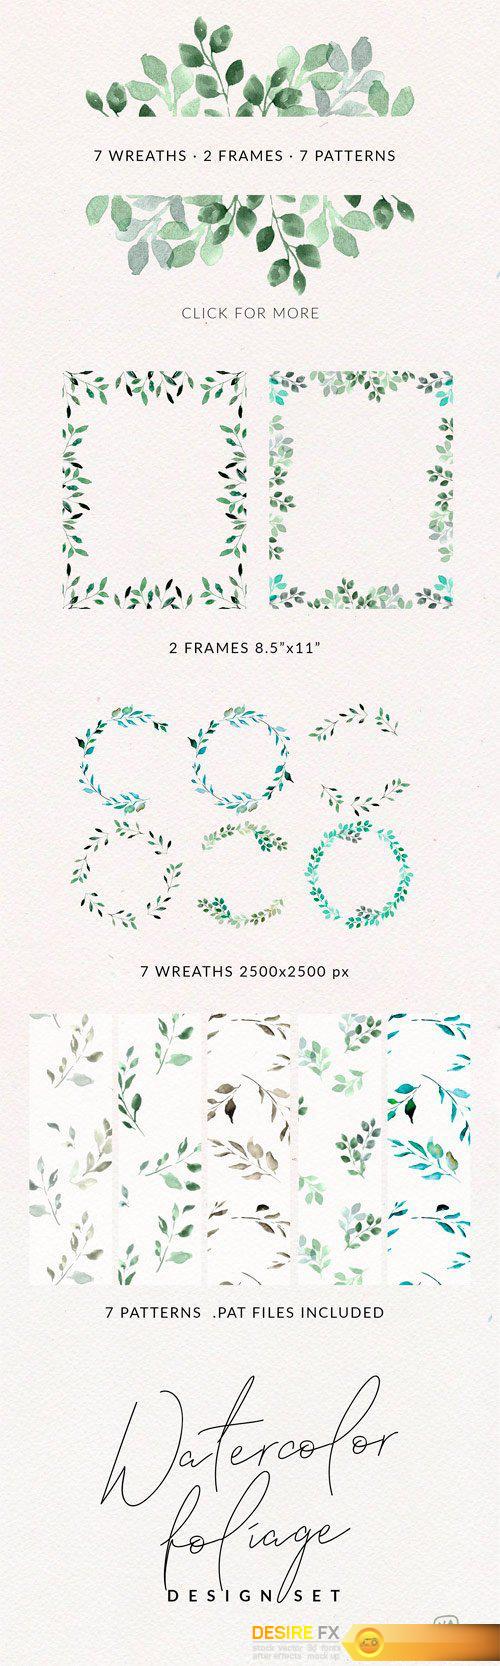 CM - Watercolor Foliage Design Set 2350345